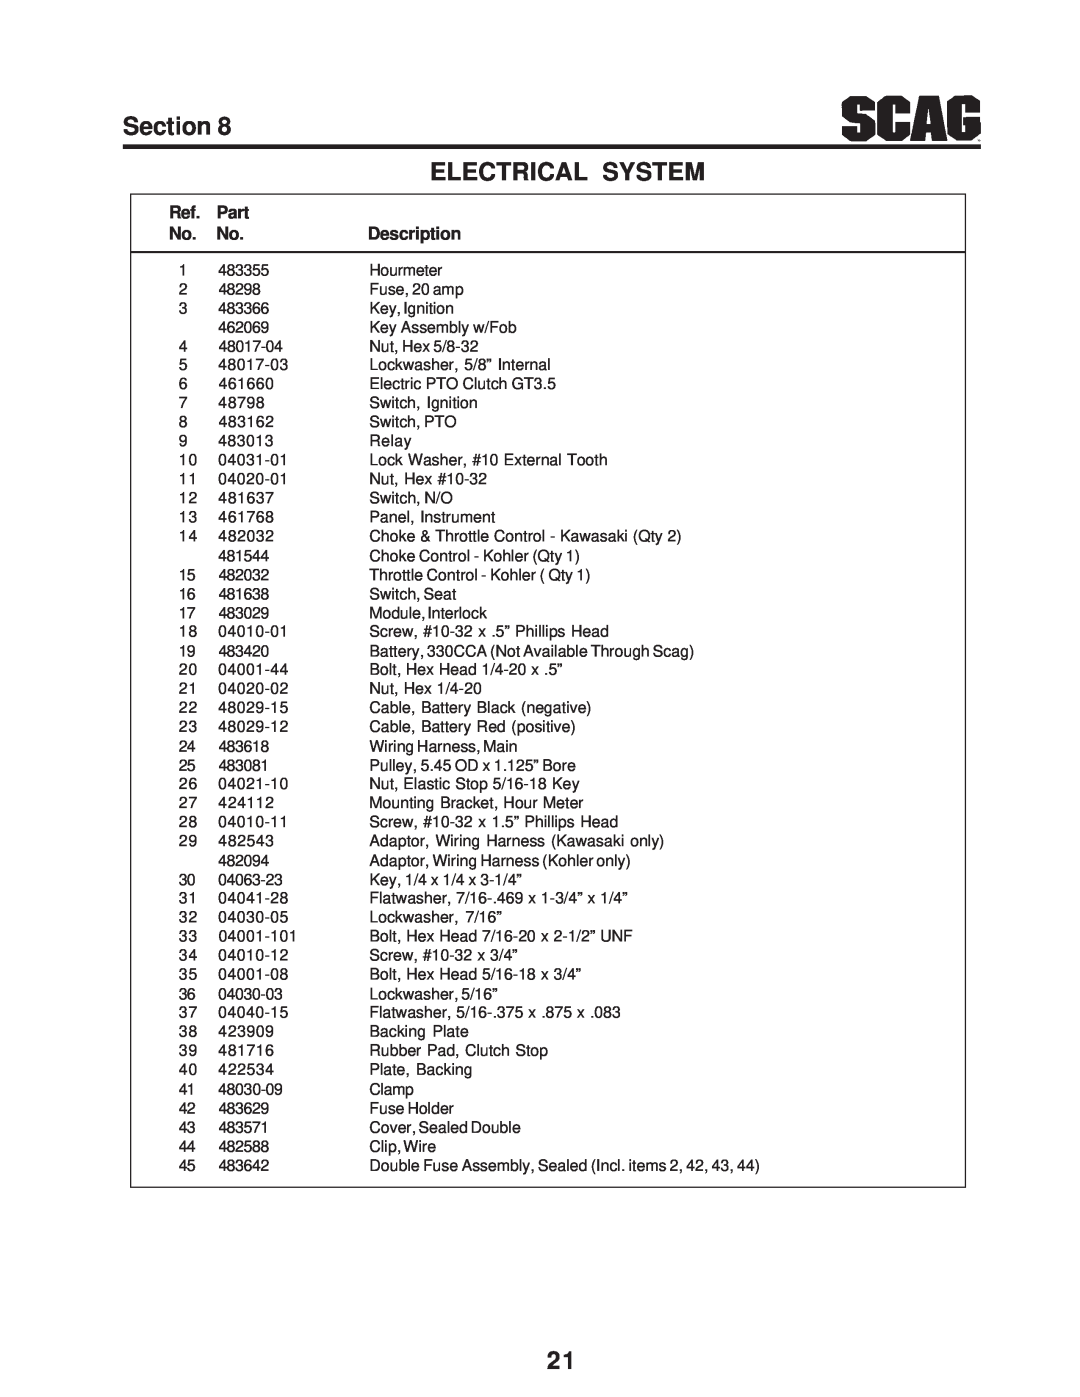 Scag Power Equipment STC48V-23CV, SMTC-48V, STC48V-19KAI manual Electrical System, Section, Part, Description 